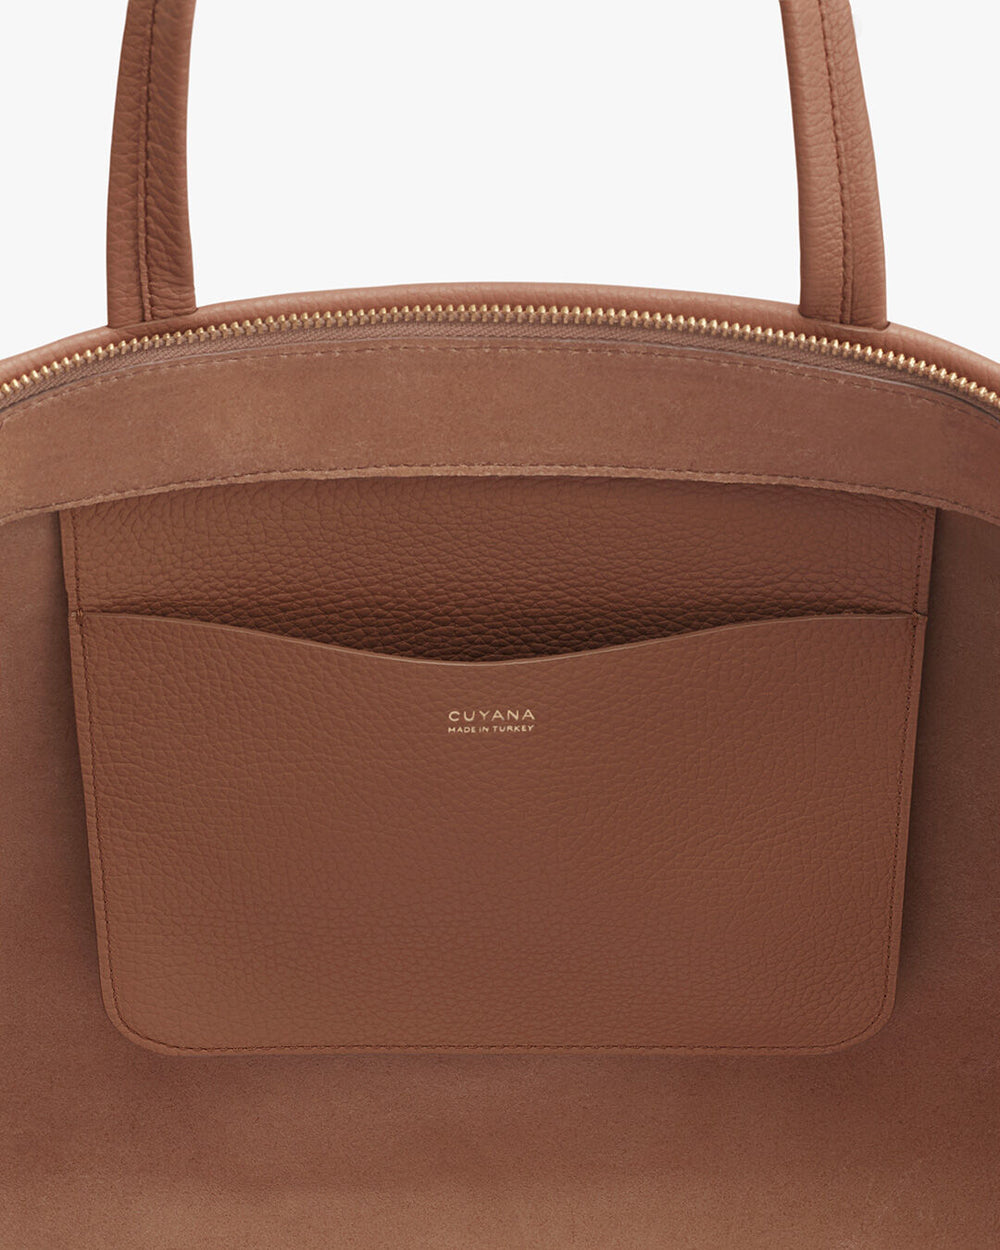 Close-up of a handbag with a brand logo and external pocket.